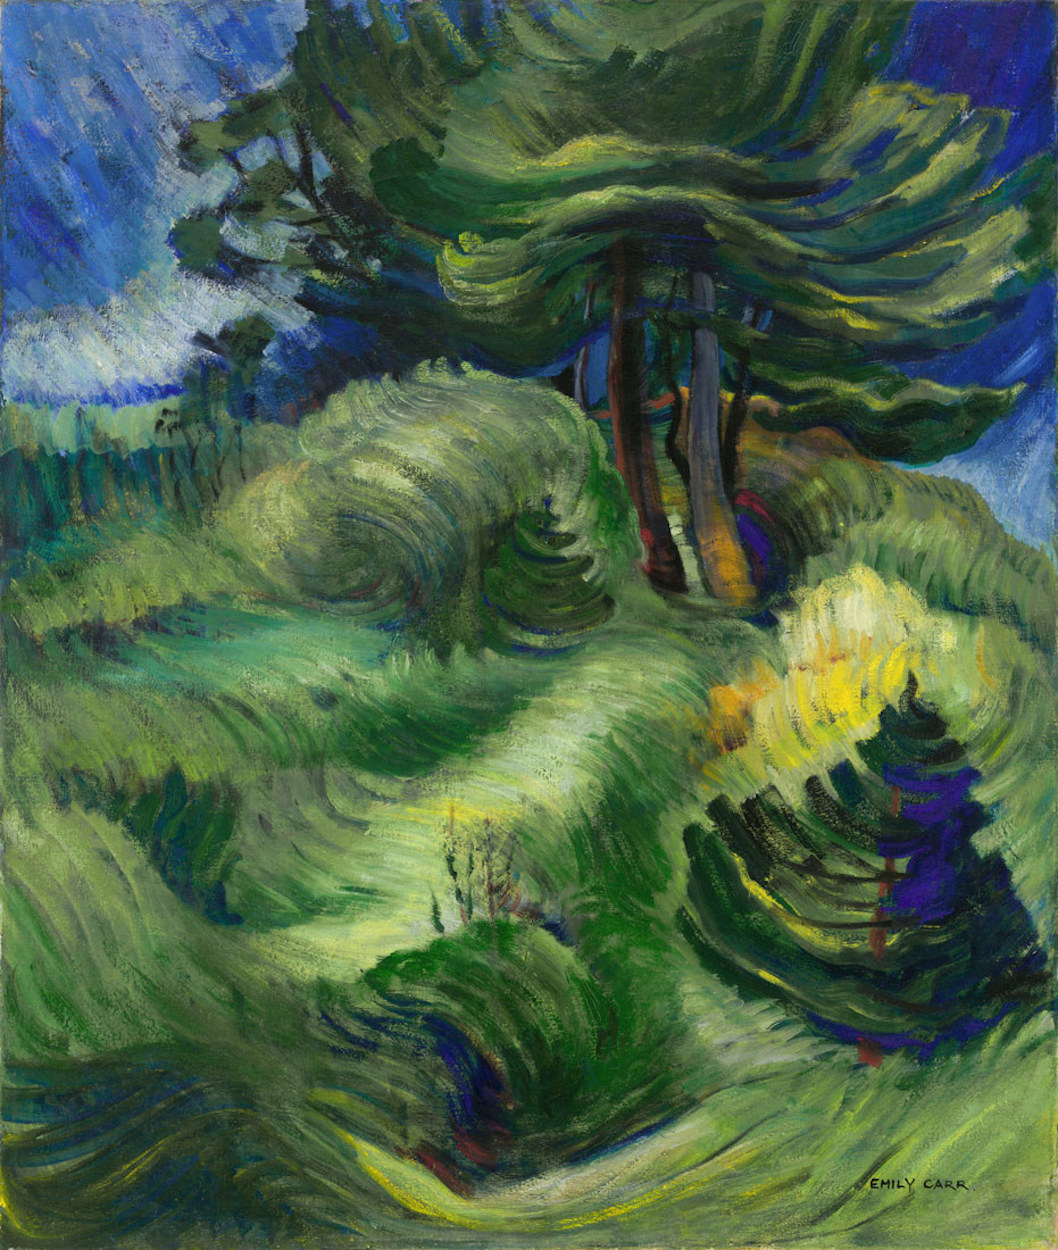 Balayé par le vent by Emily Carr - 1939 - 81.6 x 69.2 cm collection privée